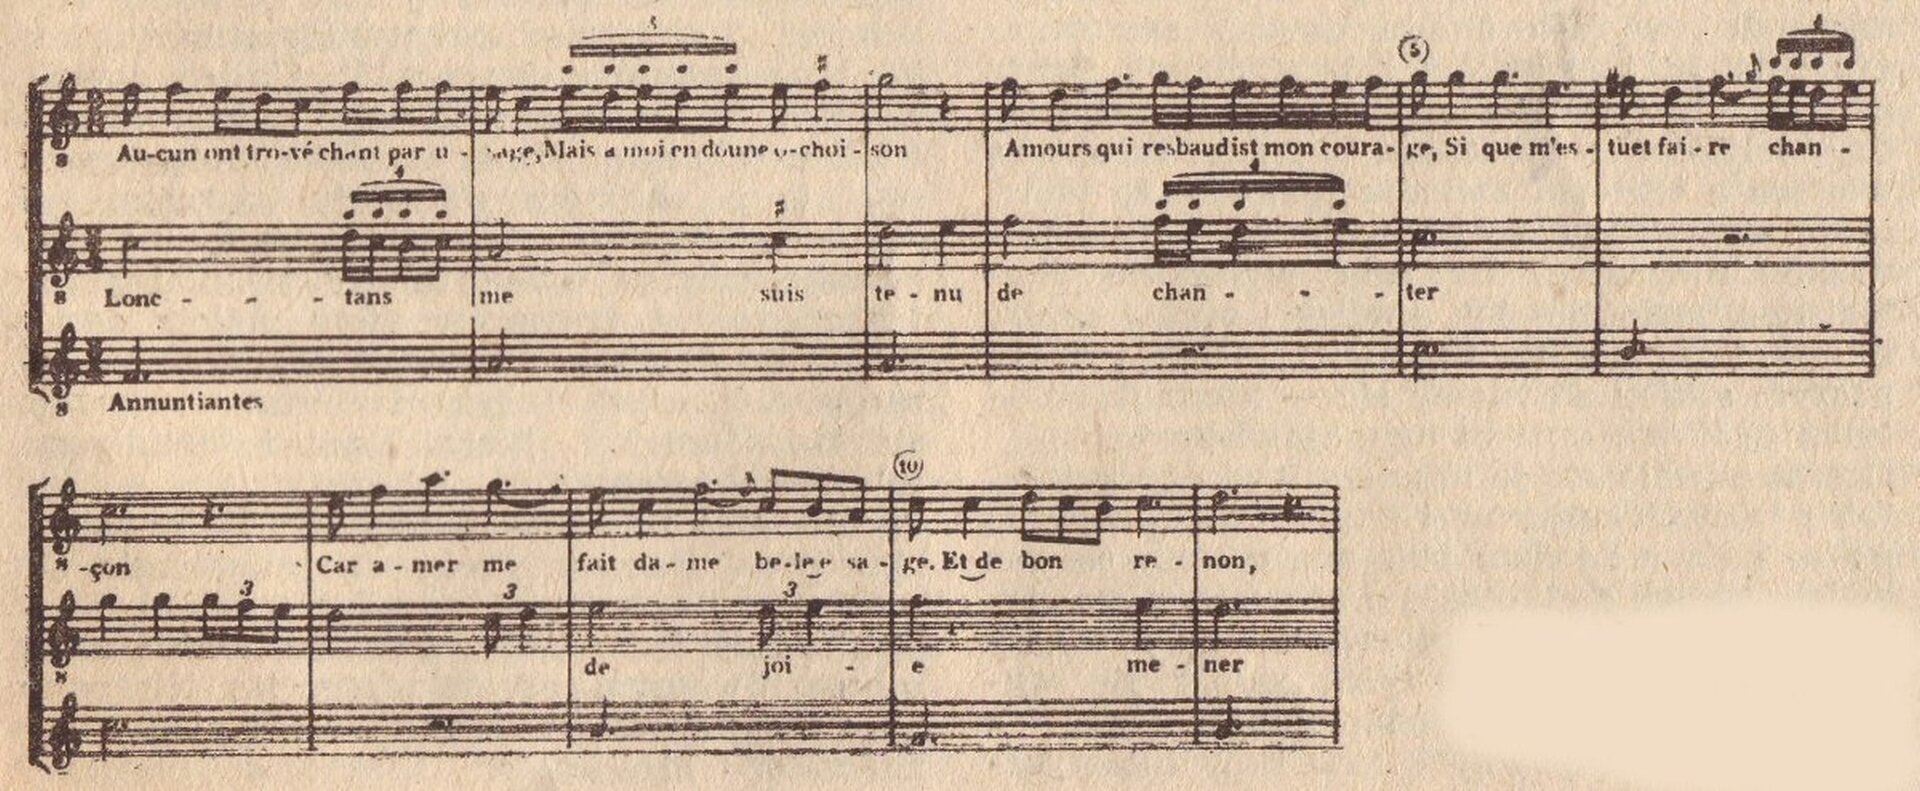 Ilustracja przedstawia zapis nutowy utworu „Partytura III”, który składa się z pięciolinii, na których umieszczone są zapisy określonych znaków muzycznych.